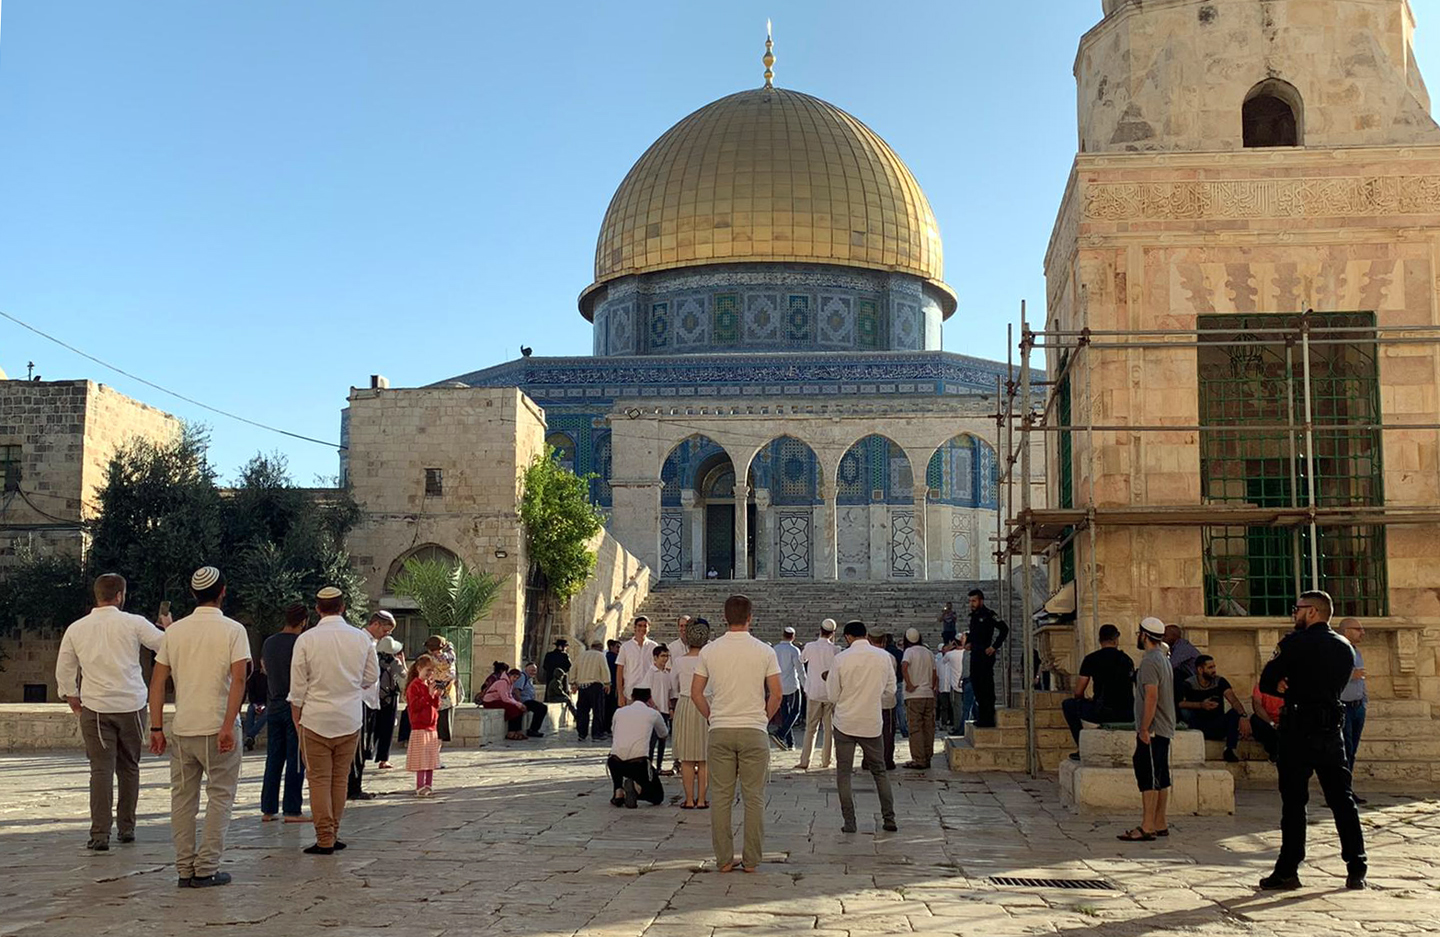 القدس-منظمات “الهيكل” المتطرفة تدعو إلى اقتحامات جماعية للمسجد الأقصى